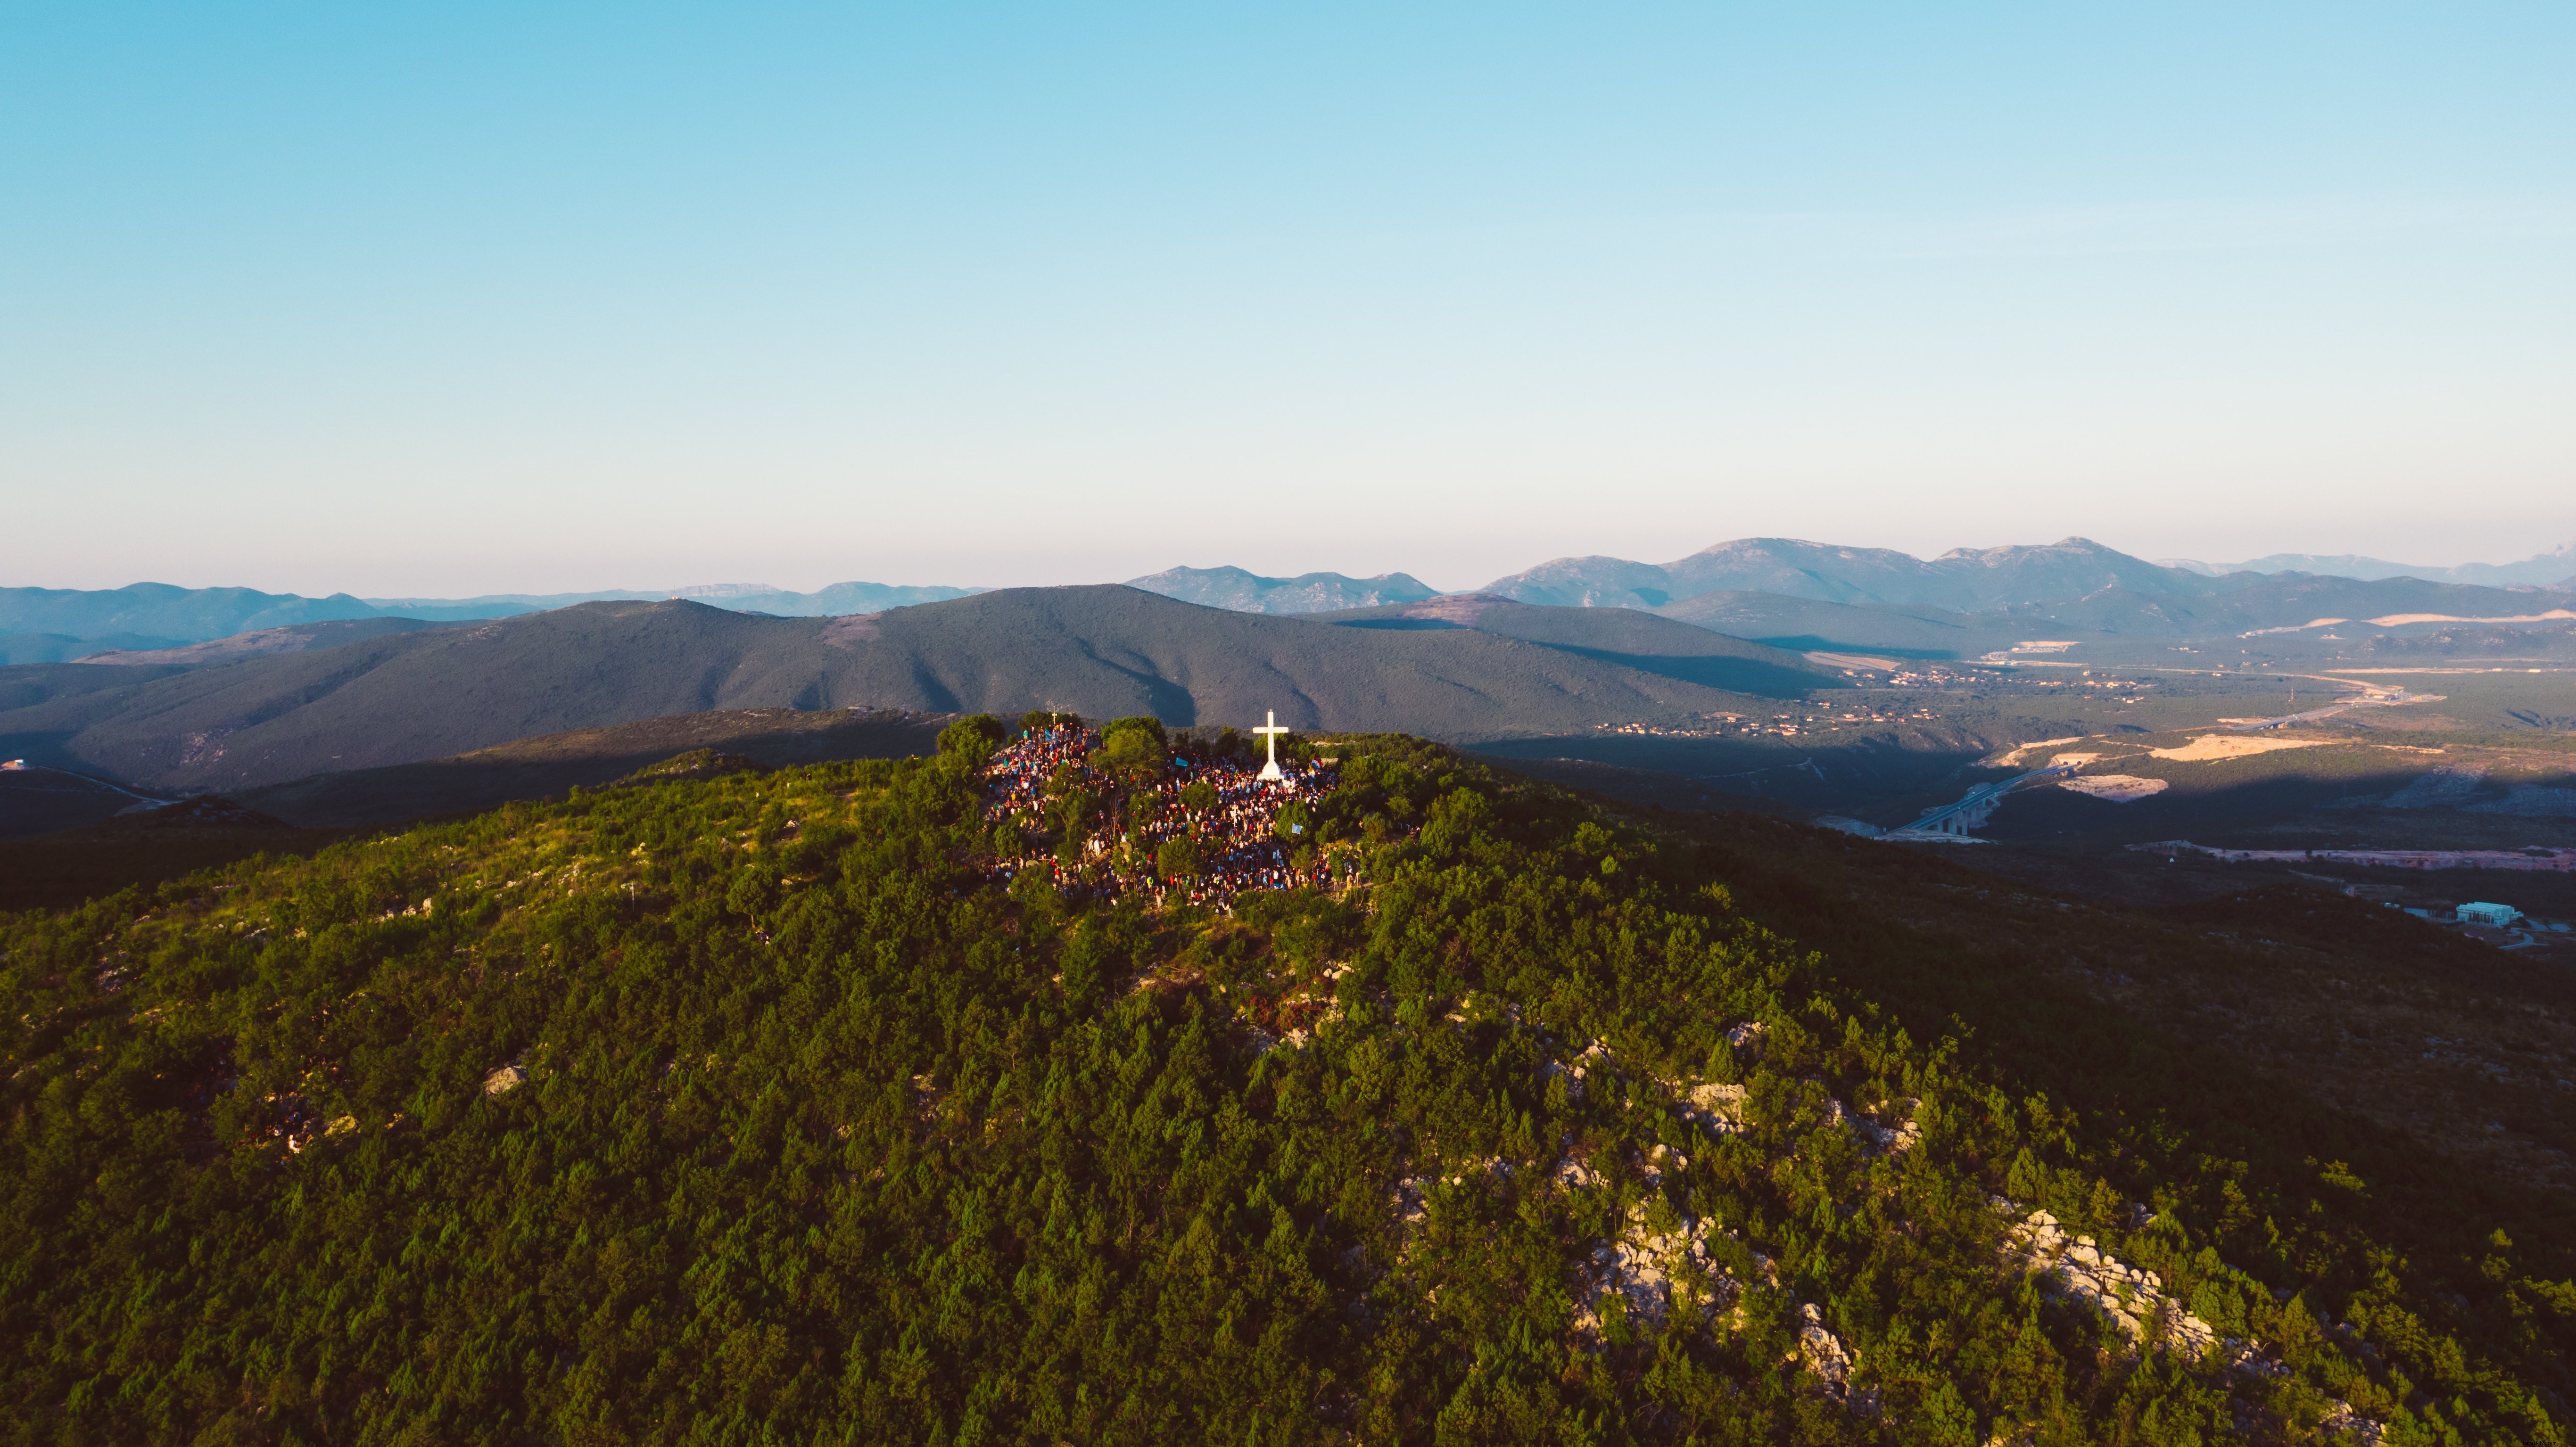 Turistas visitan una gran cruz parada en una foto de la cima de una montaña